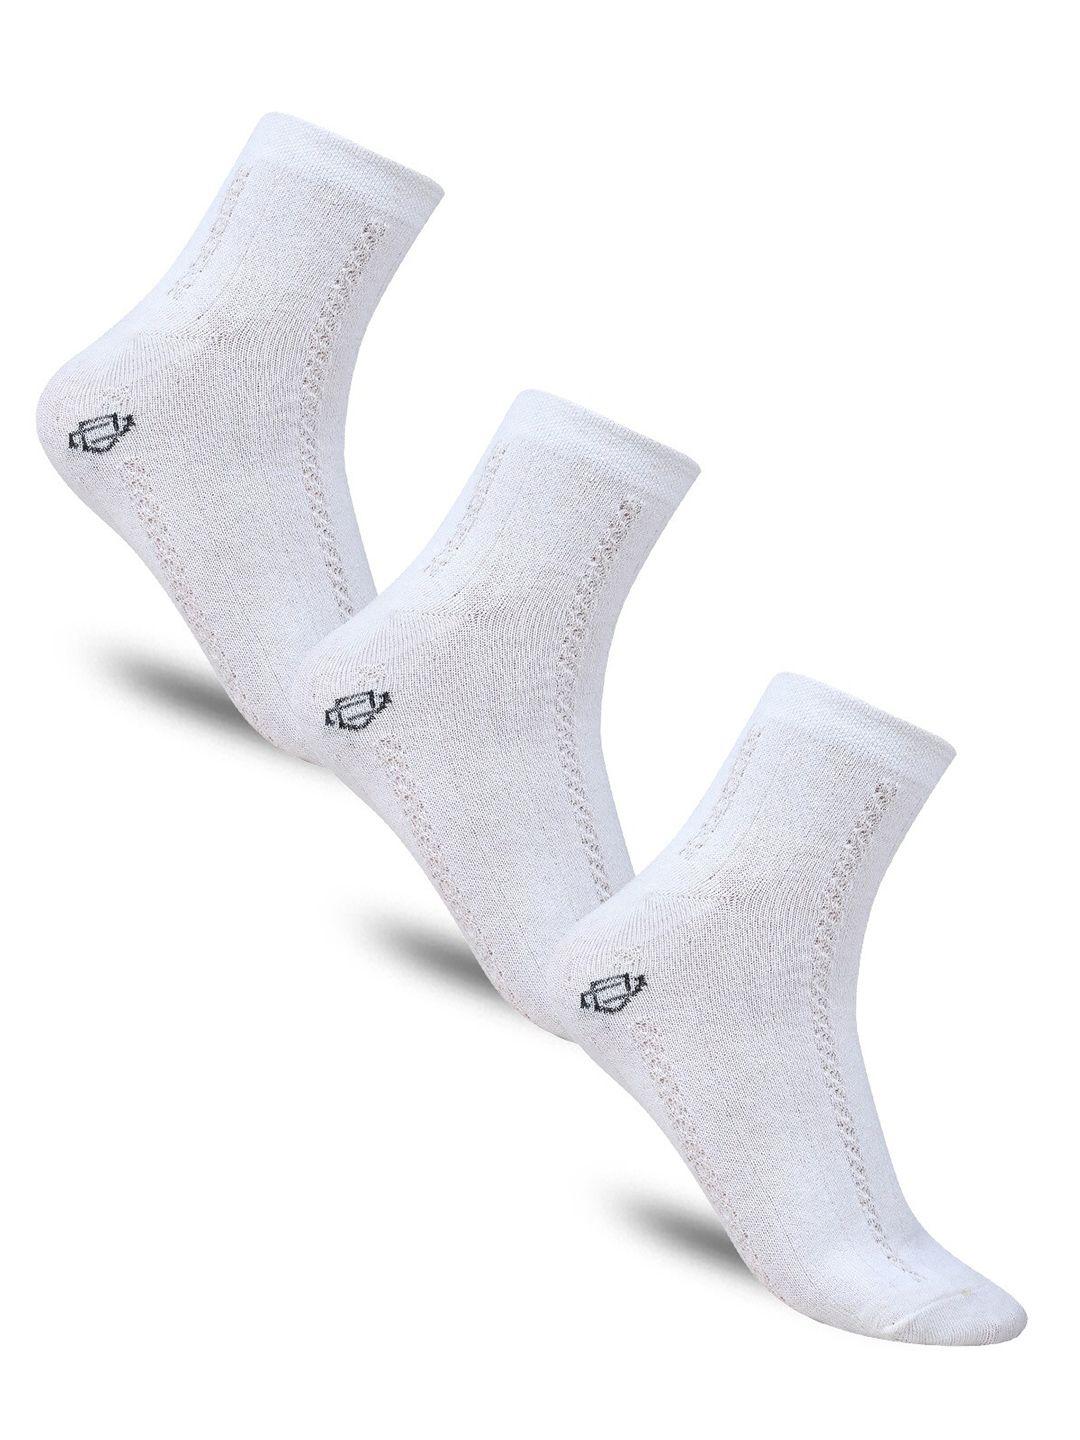 dollar socks women pack of 3 patterned cotton above ankle-length socks